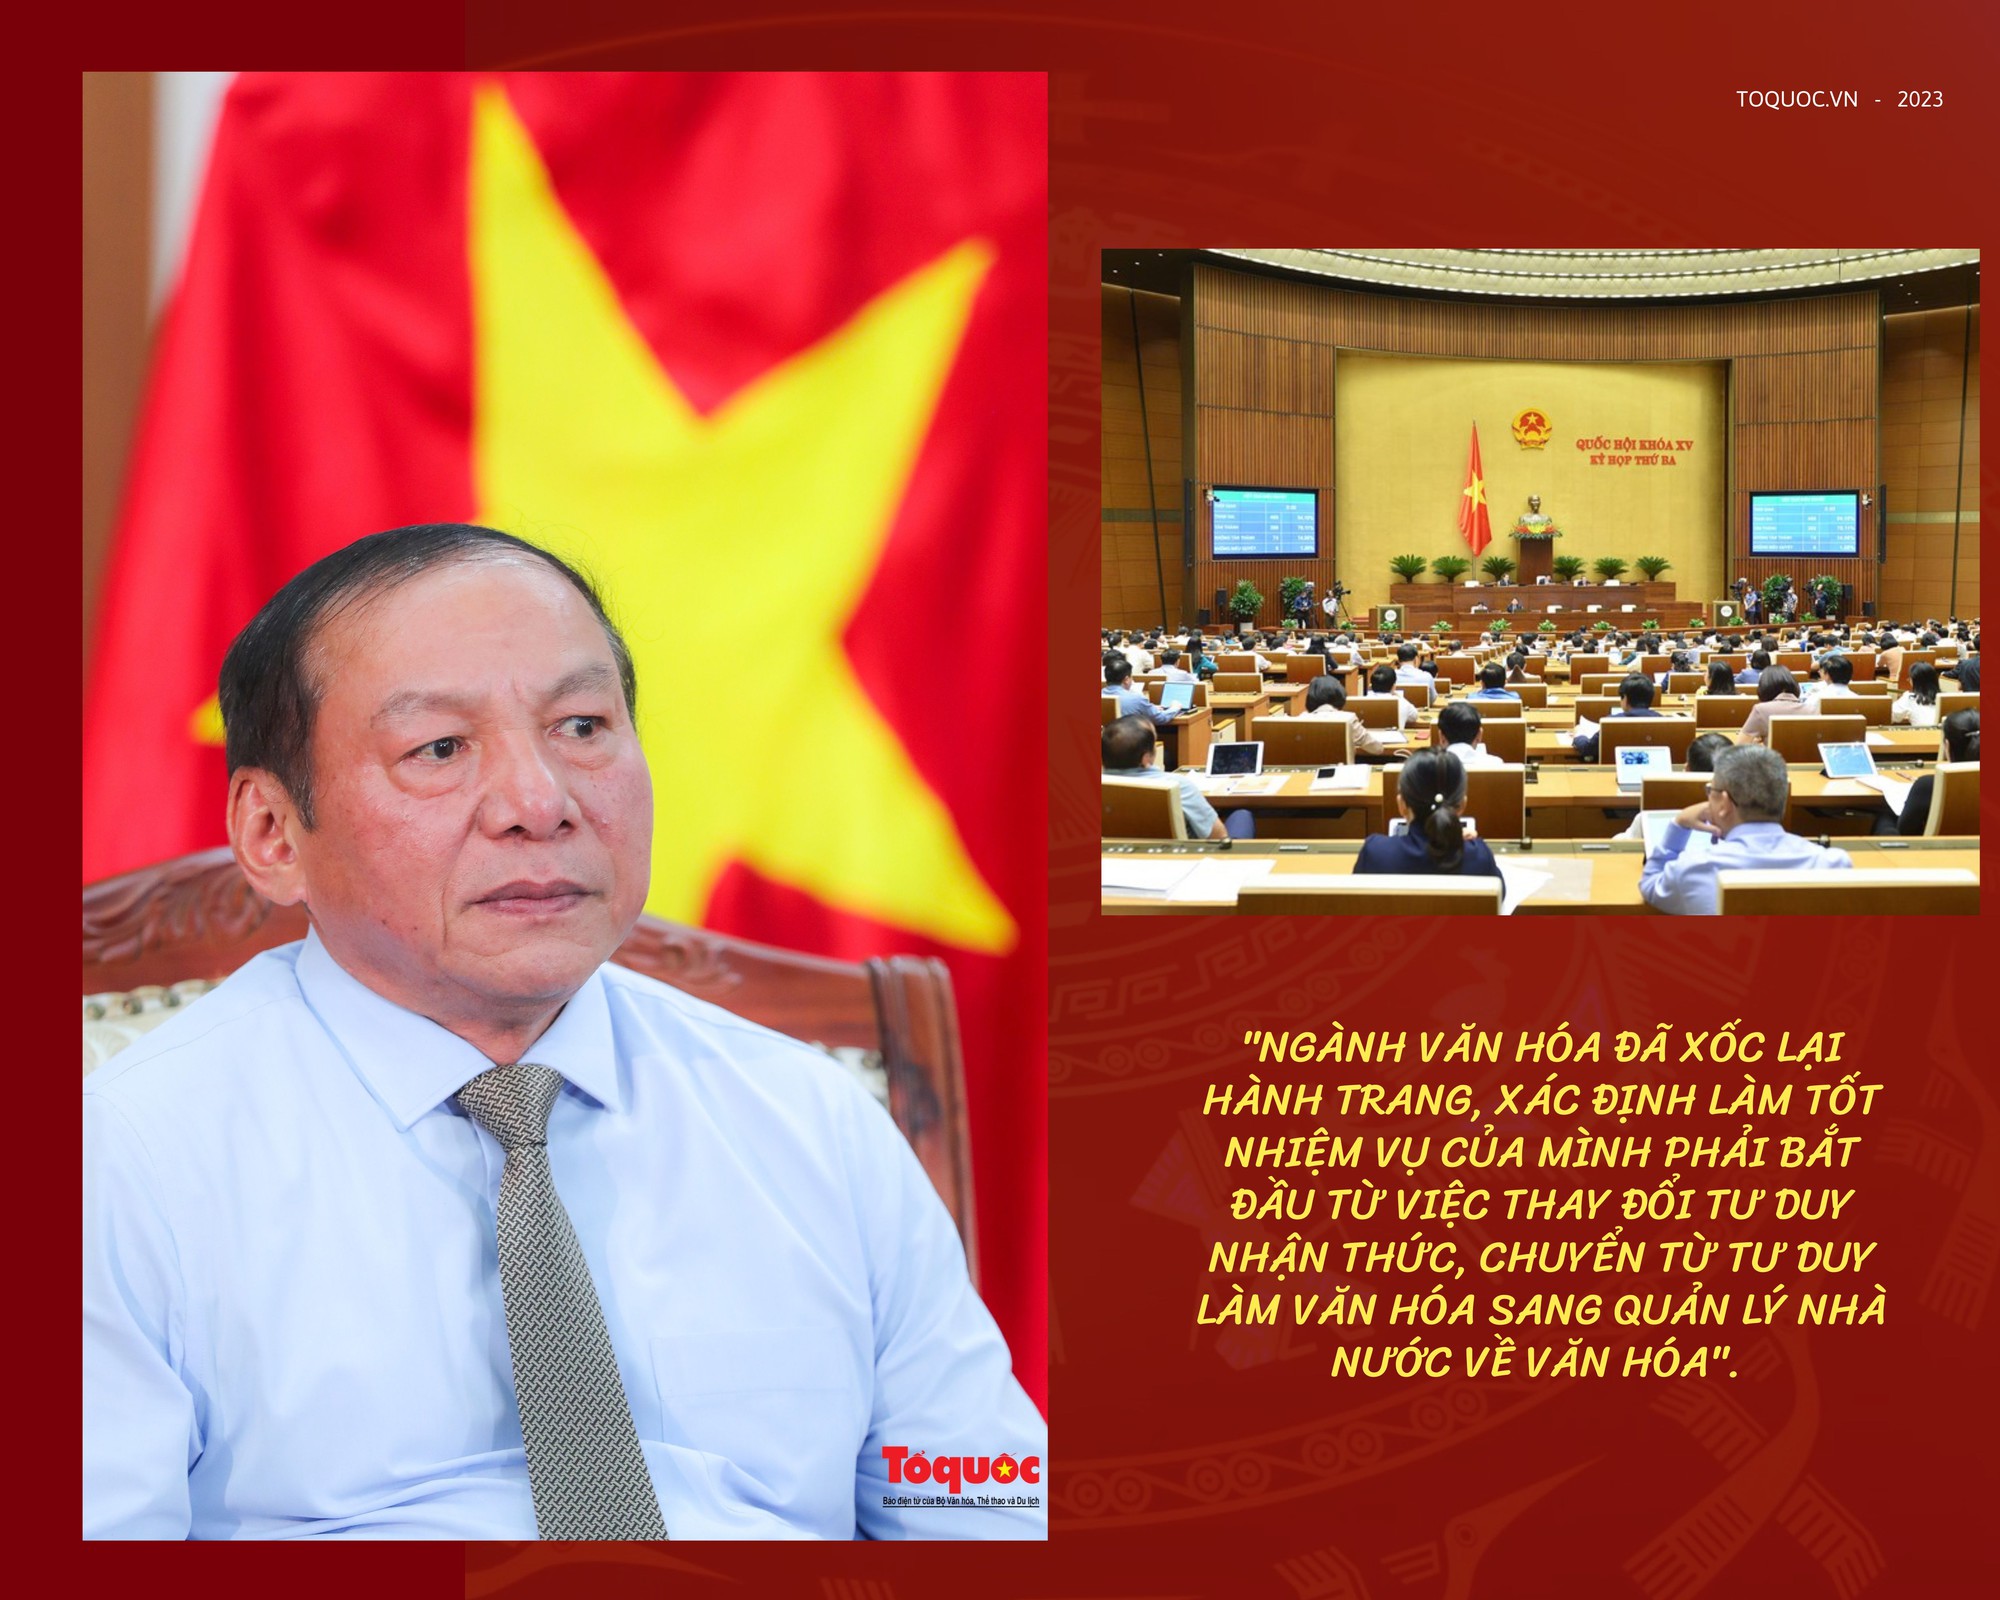 Bộ trưởng Nguyễn Văn Hùng: “Những kết quả đạt được sau nửa nhiệm kỳ cho toàn ngành Văn hóa thấy được mình đang đi đúng hướng” - Ảnh 2.